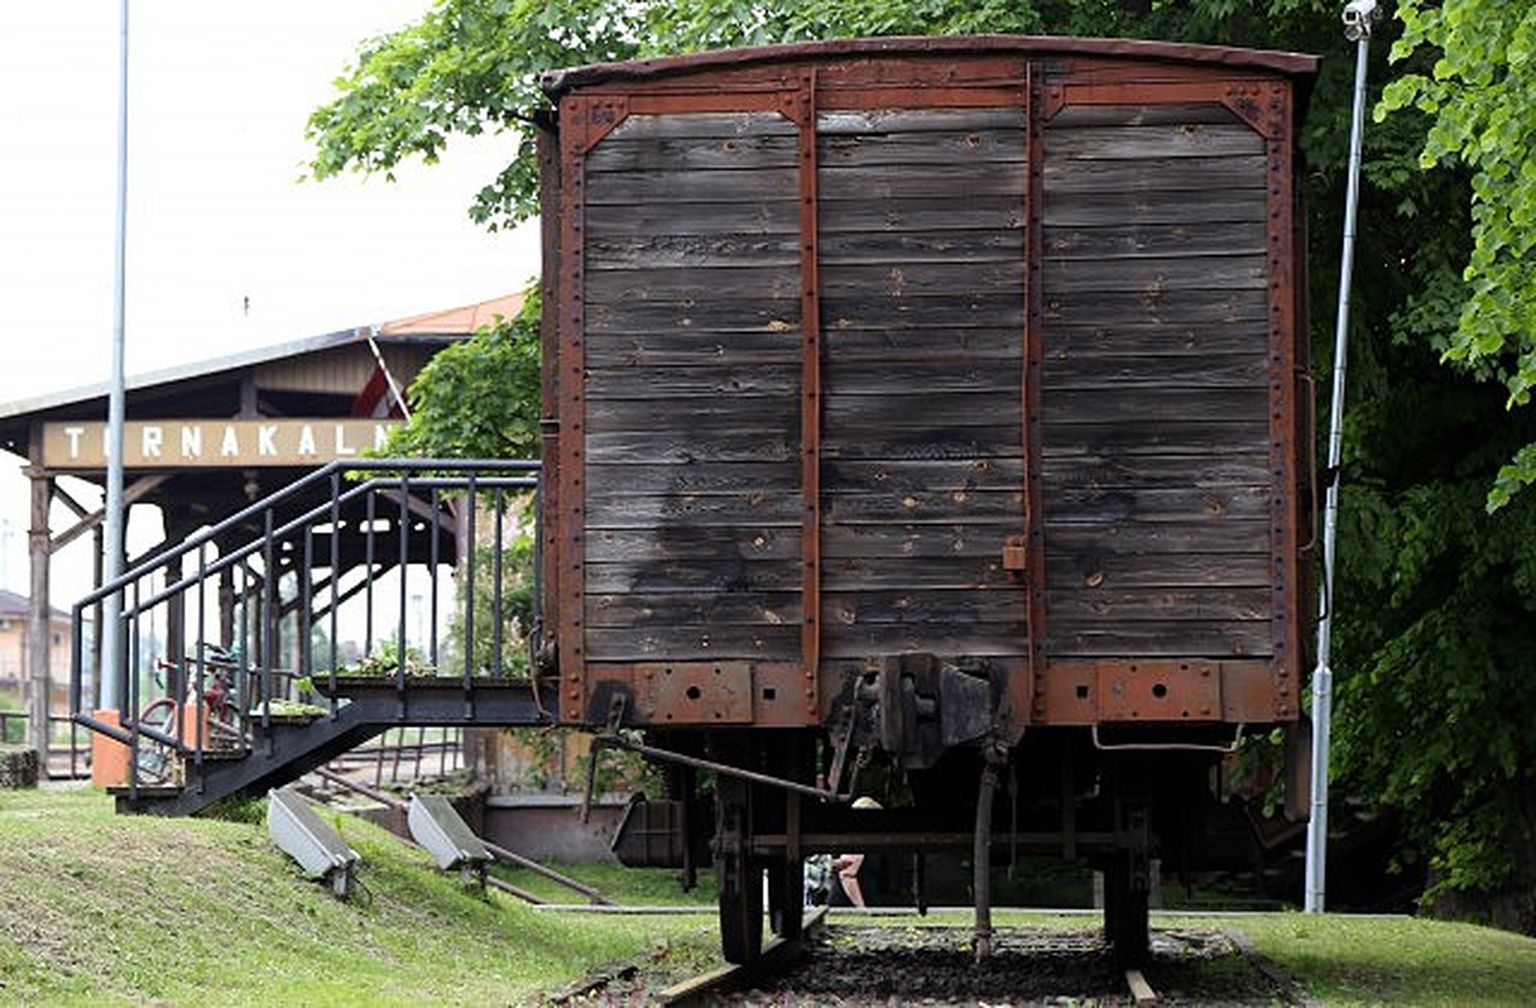 Мемориальный памятный вагон у железнодорожной станции Торнякалнс